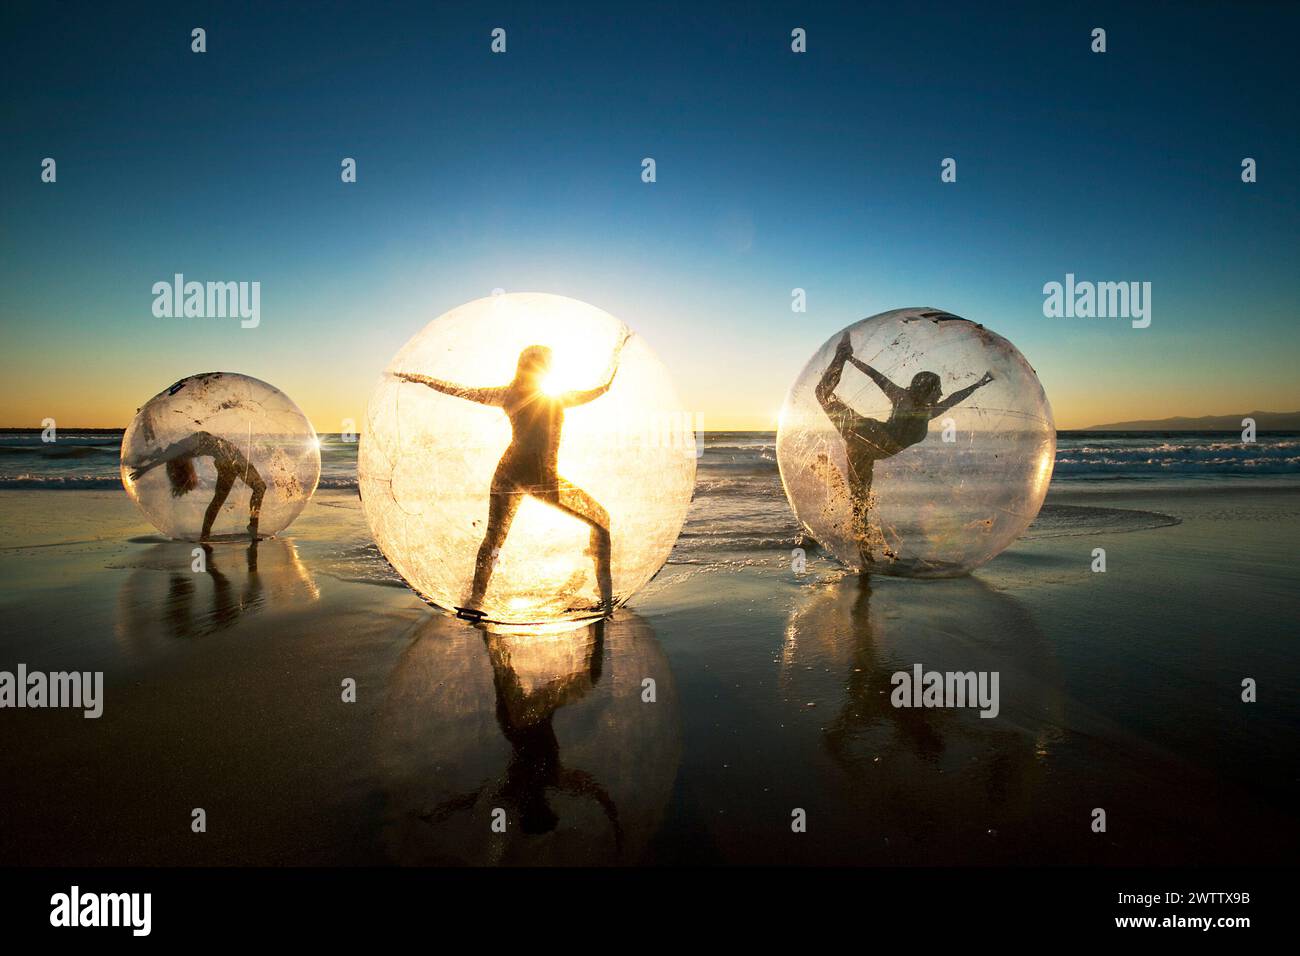 Silhouettes silhouettées à l'intérieur d'orbes transparents sur une plage au coucher du soleil Banque D'Images